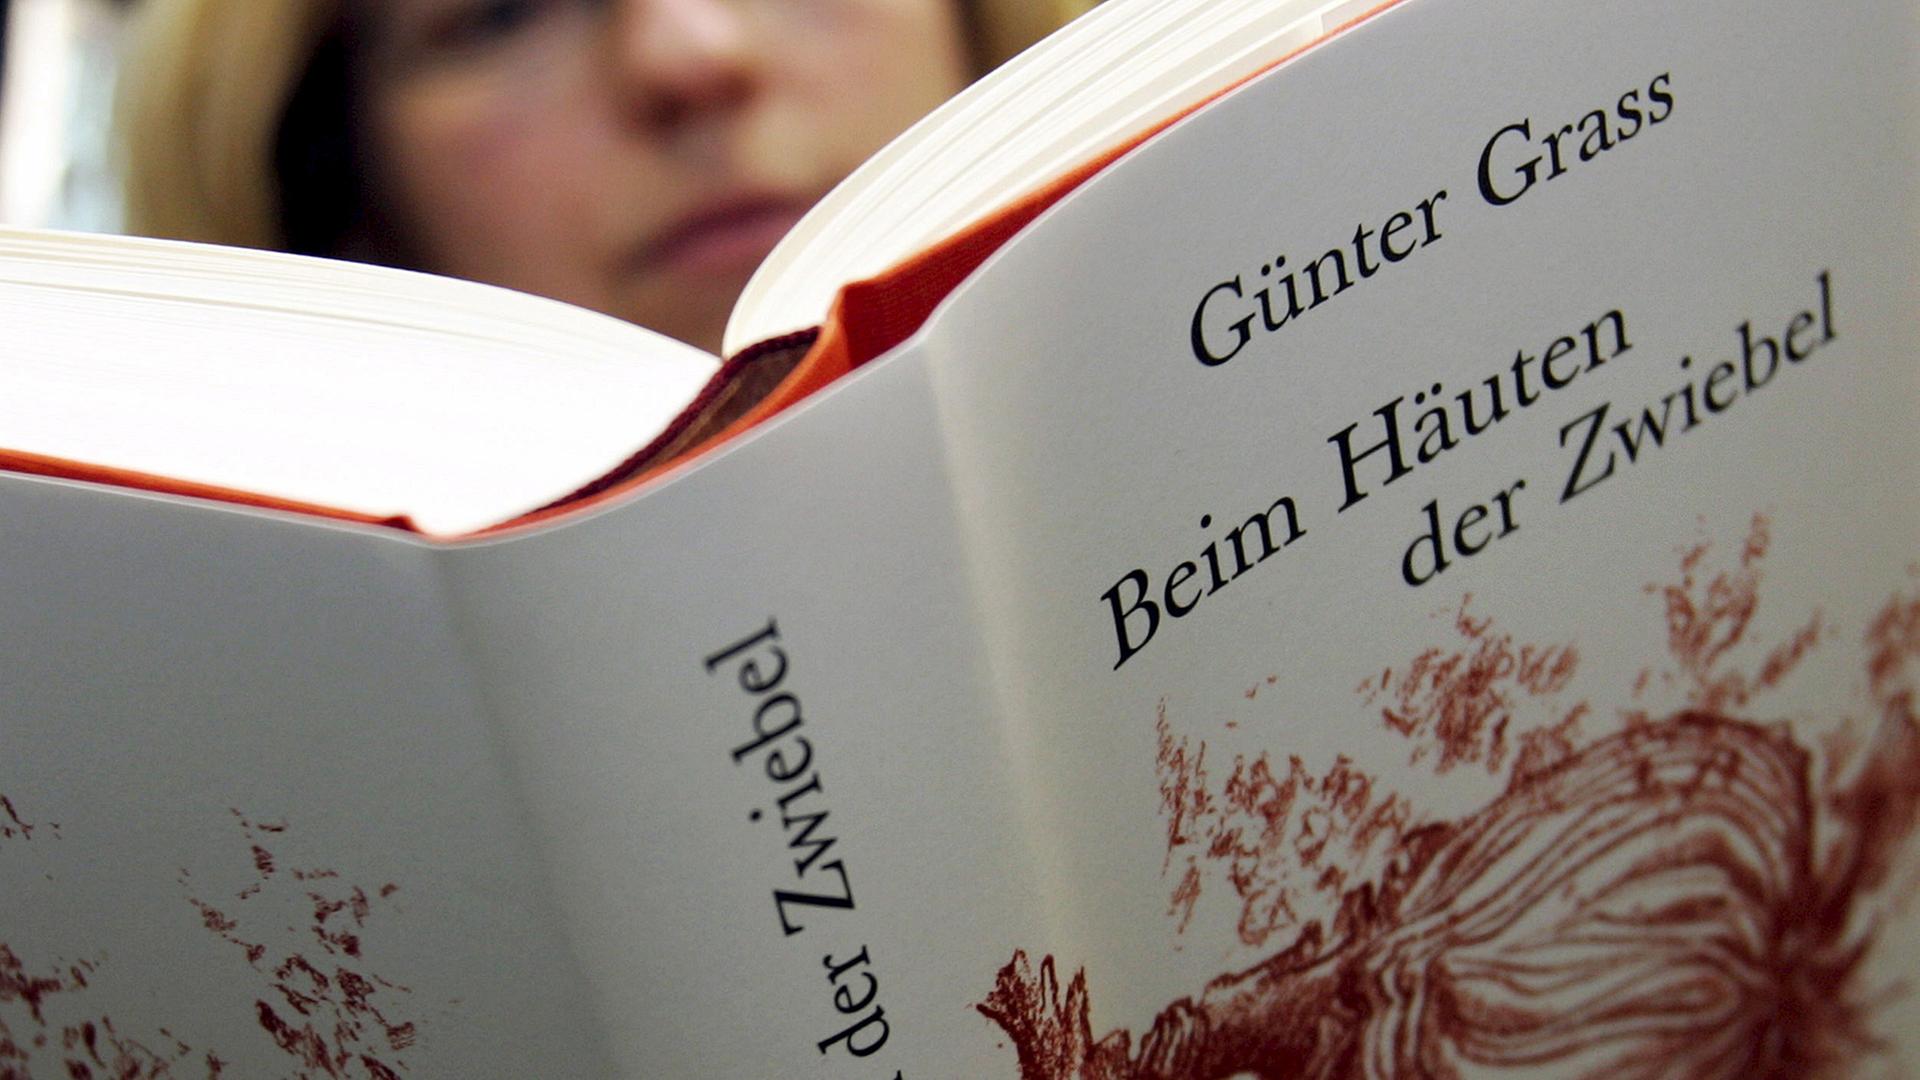 Das Buch "Beim Häuten der Zwiebel" von Literaturnobelpreisträger Günter Grass.